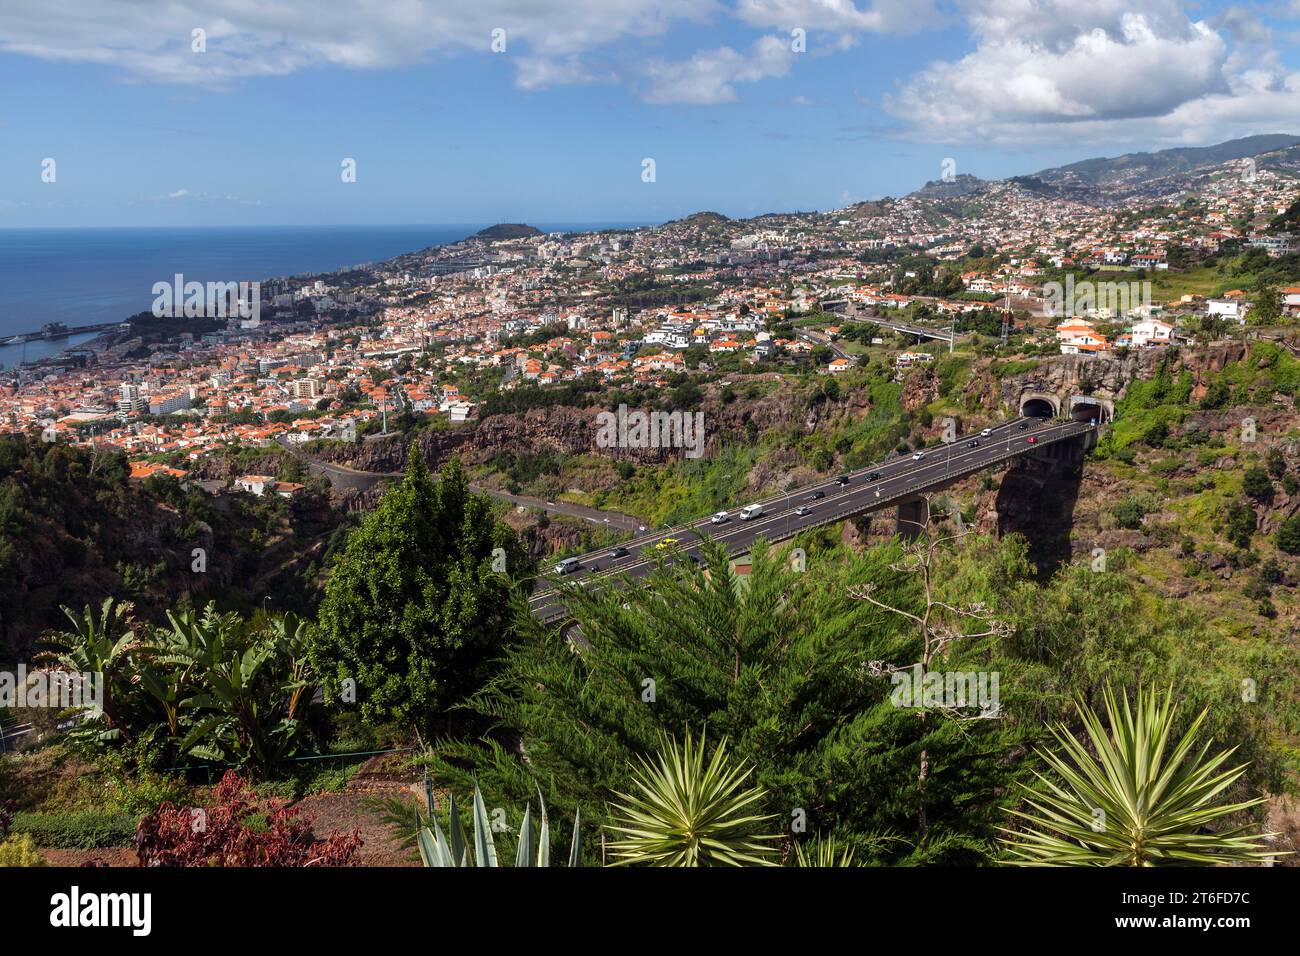 Vista dal giardino botanico di Funchal, Jardim Botanico, alla città di Funchal, Madeira, Portogallo Foto Stock